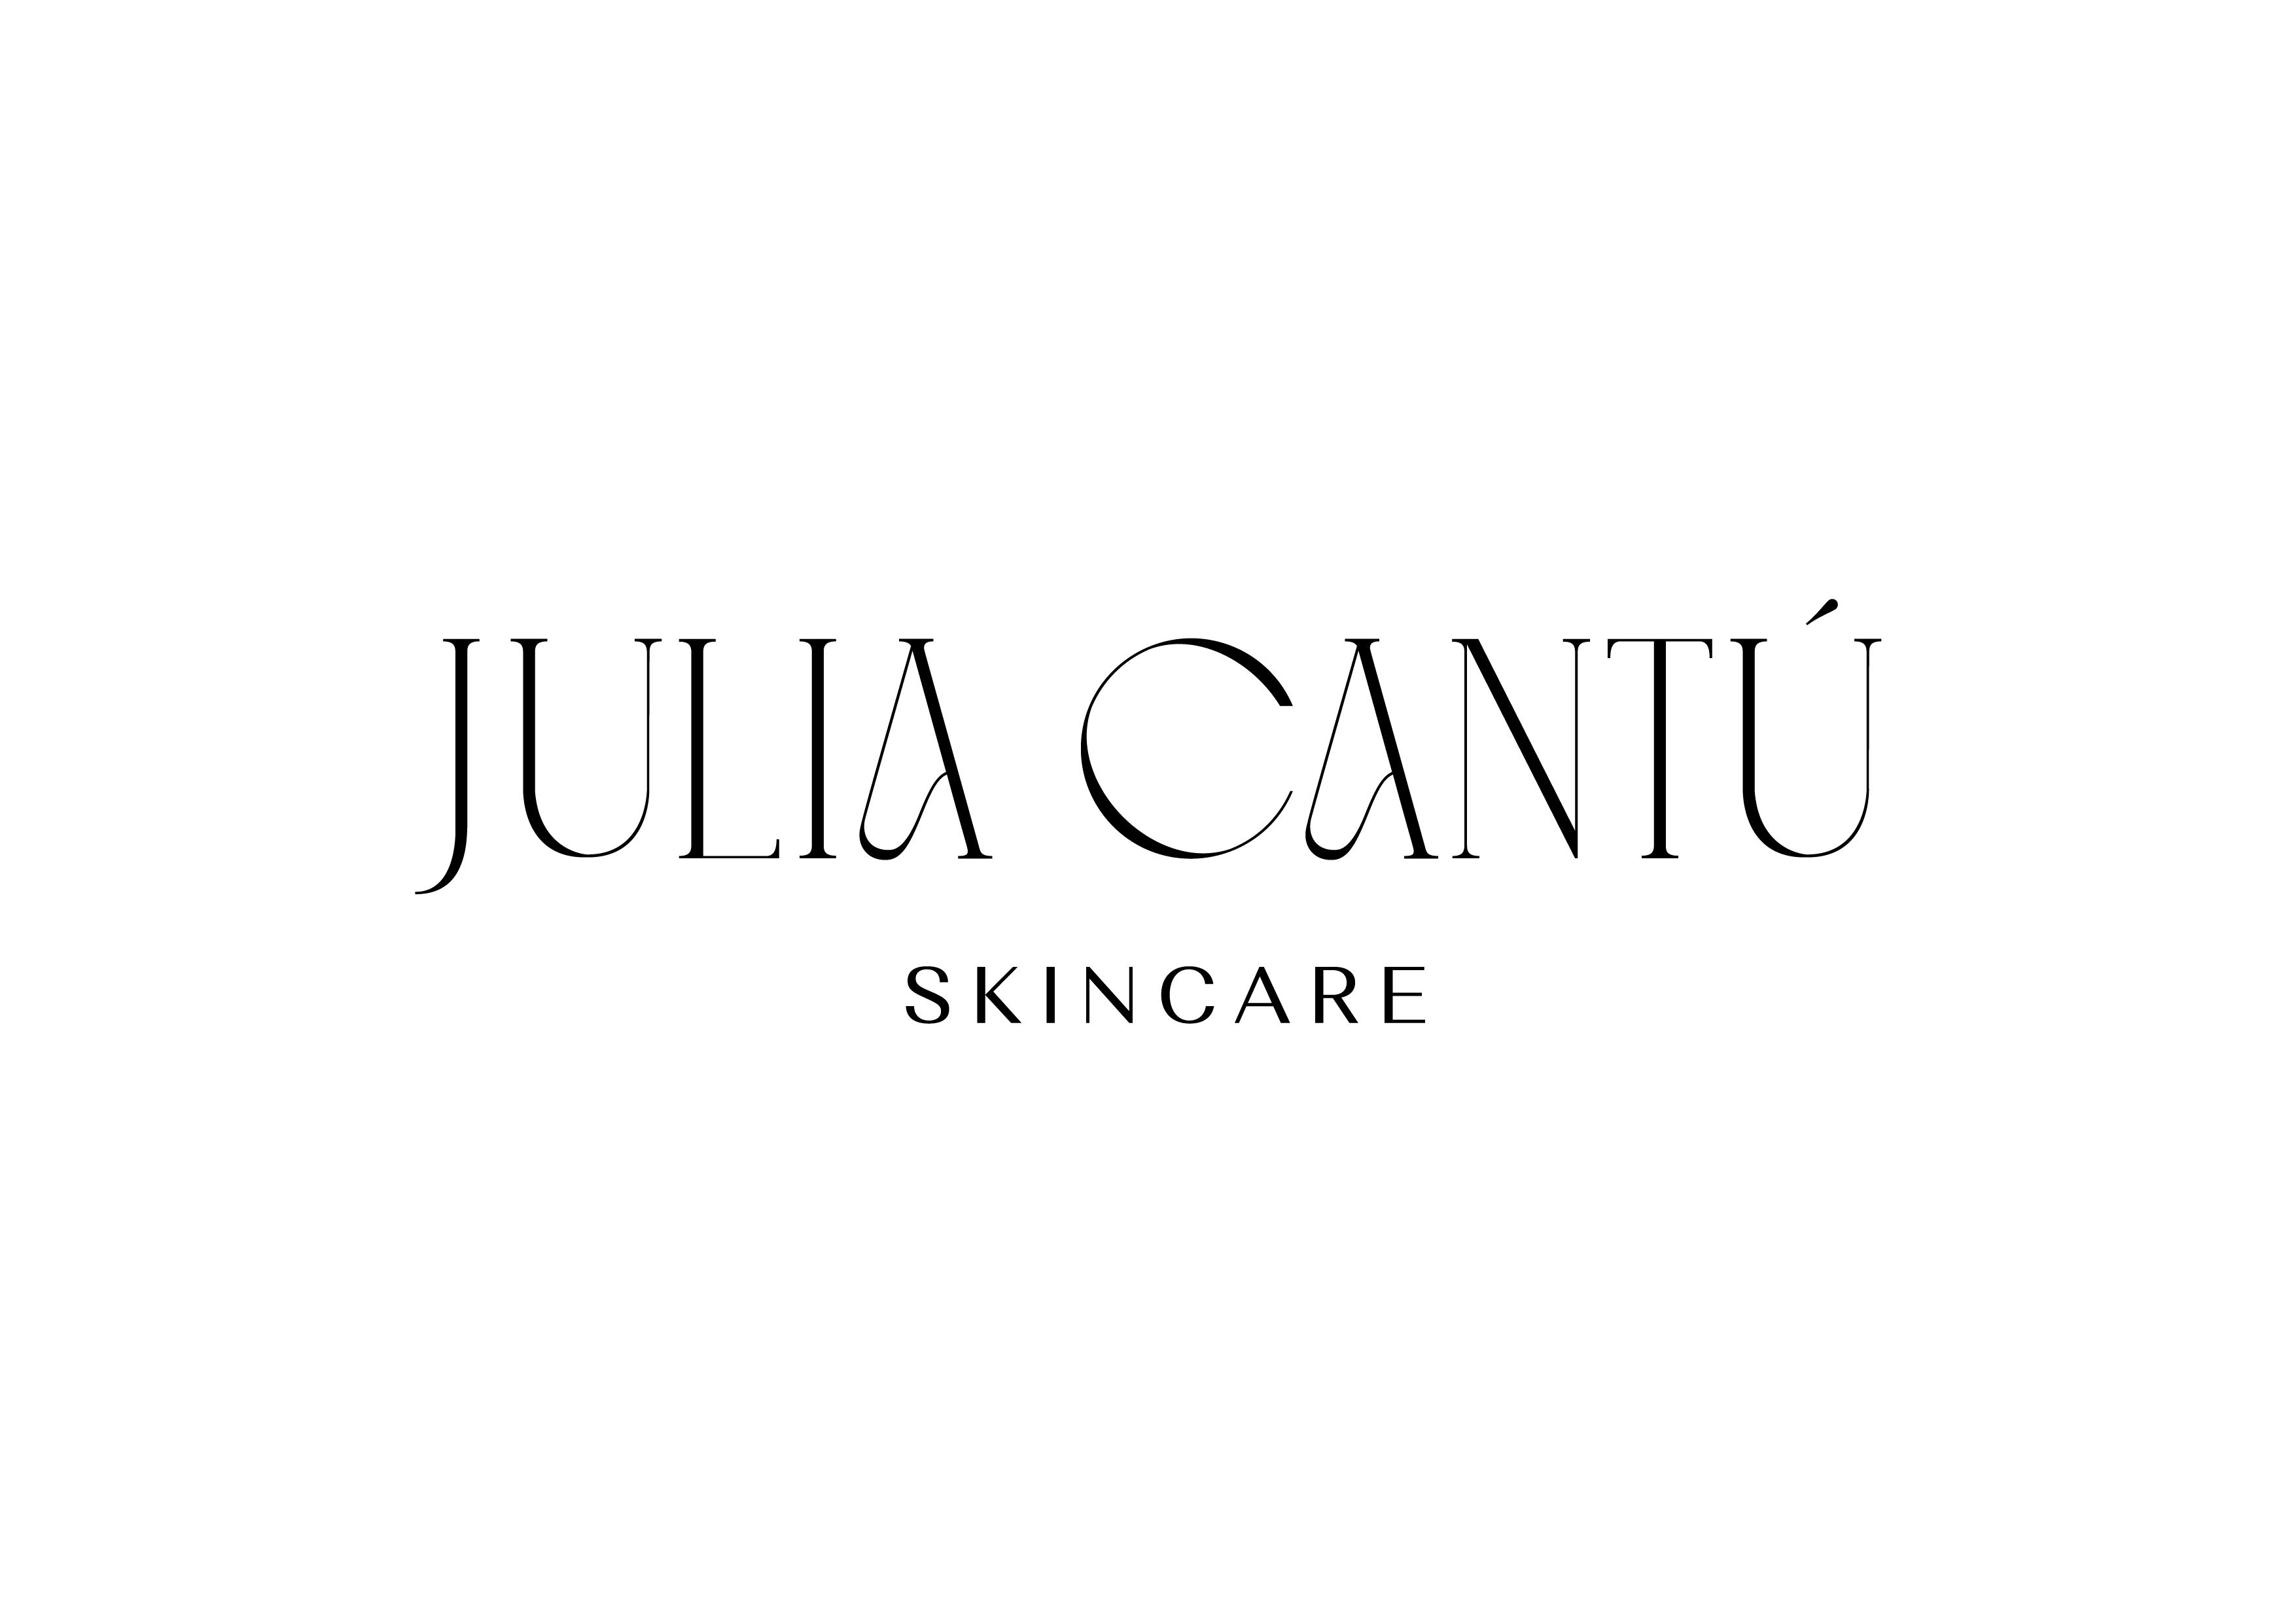 JULIA CANTU SKINCARE LLC.